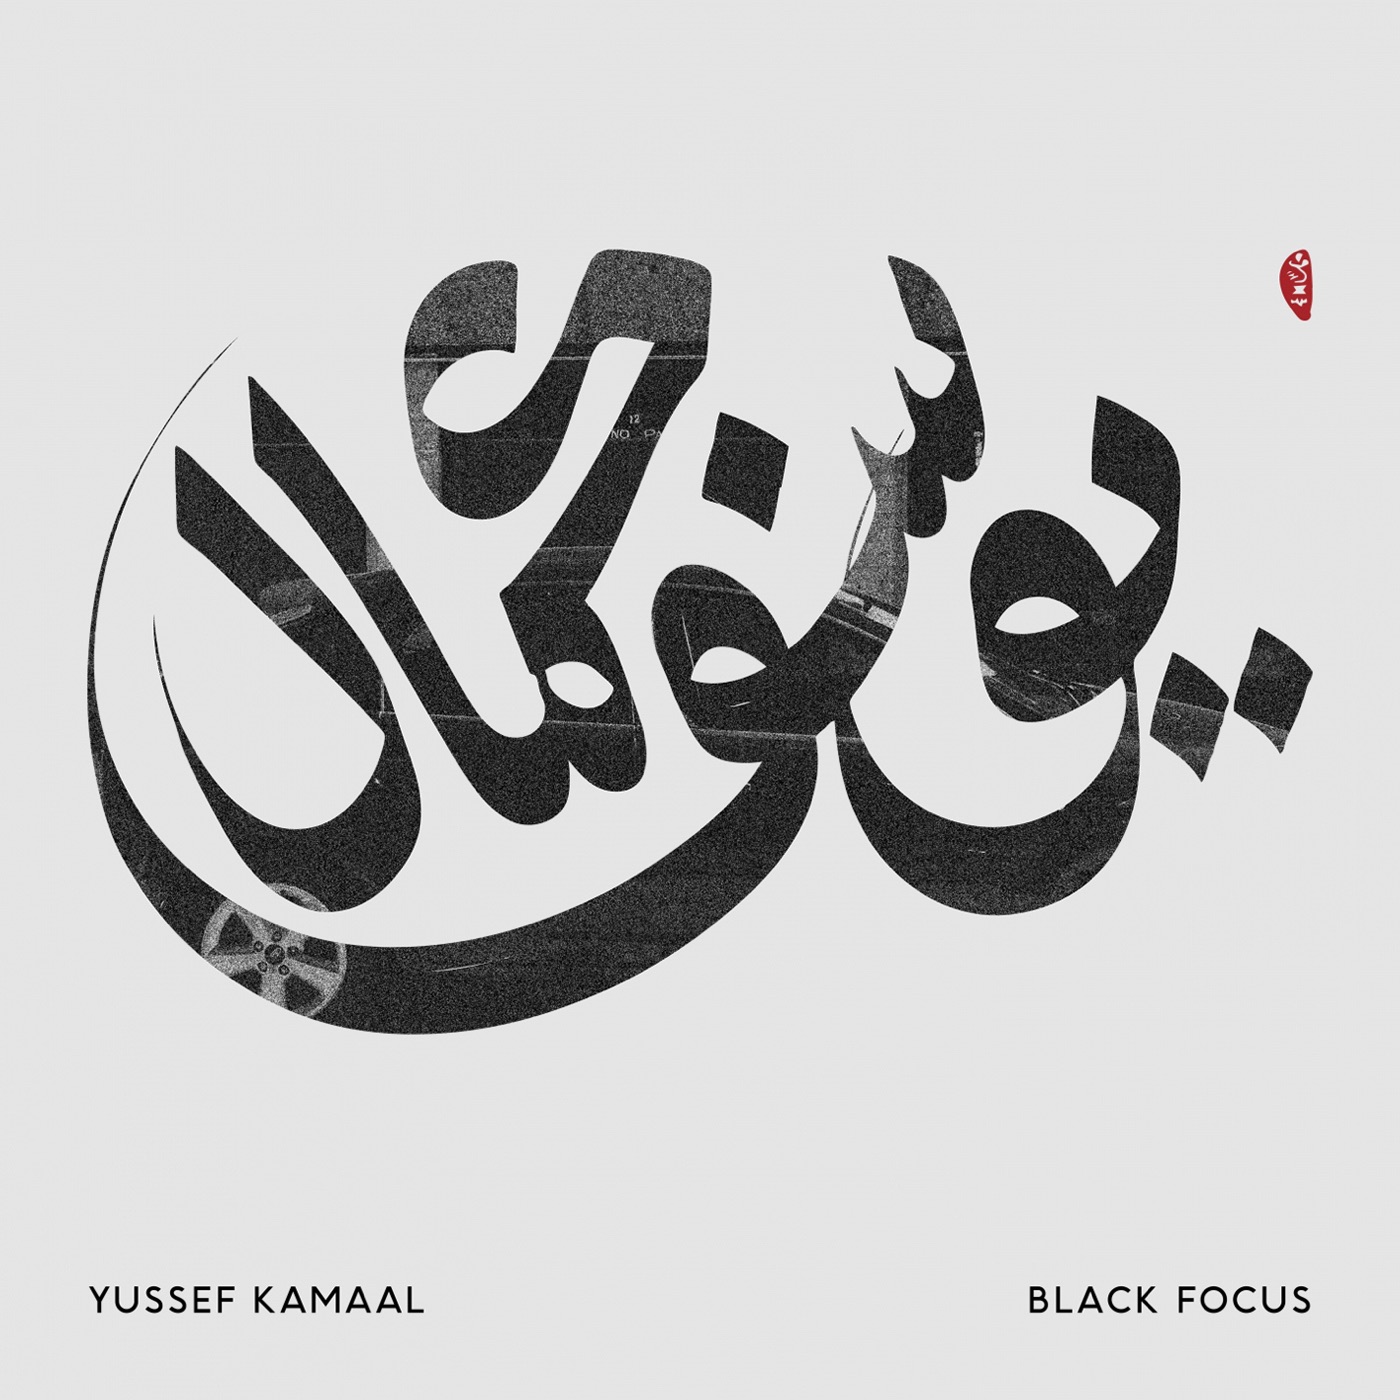 Black Focus by Yussef Kamaal